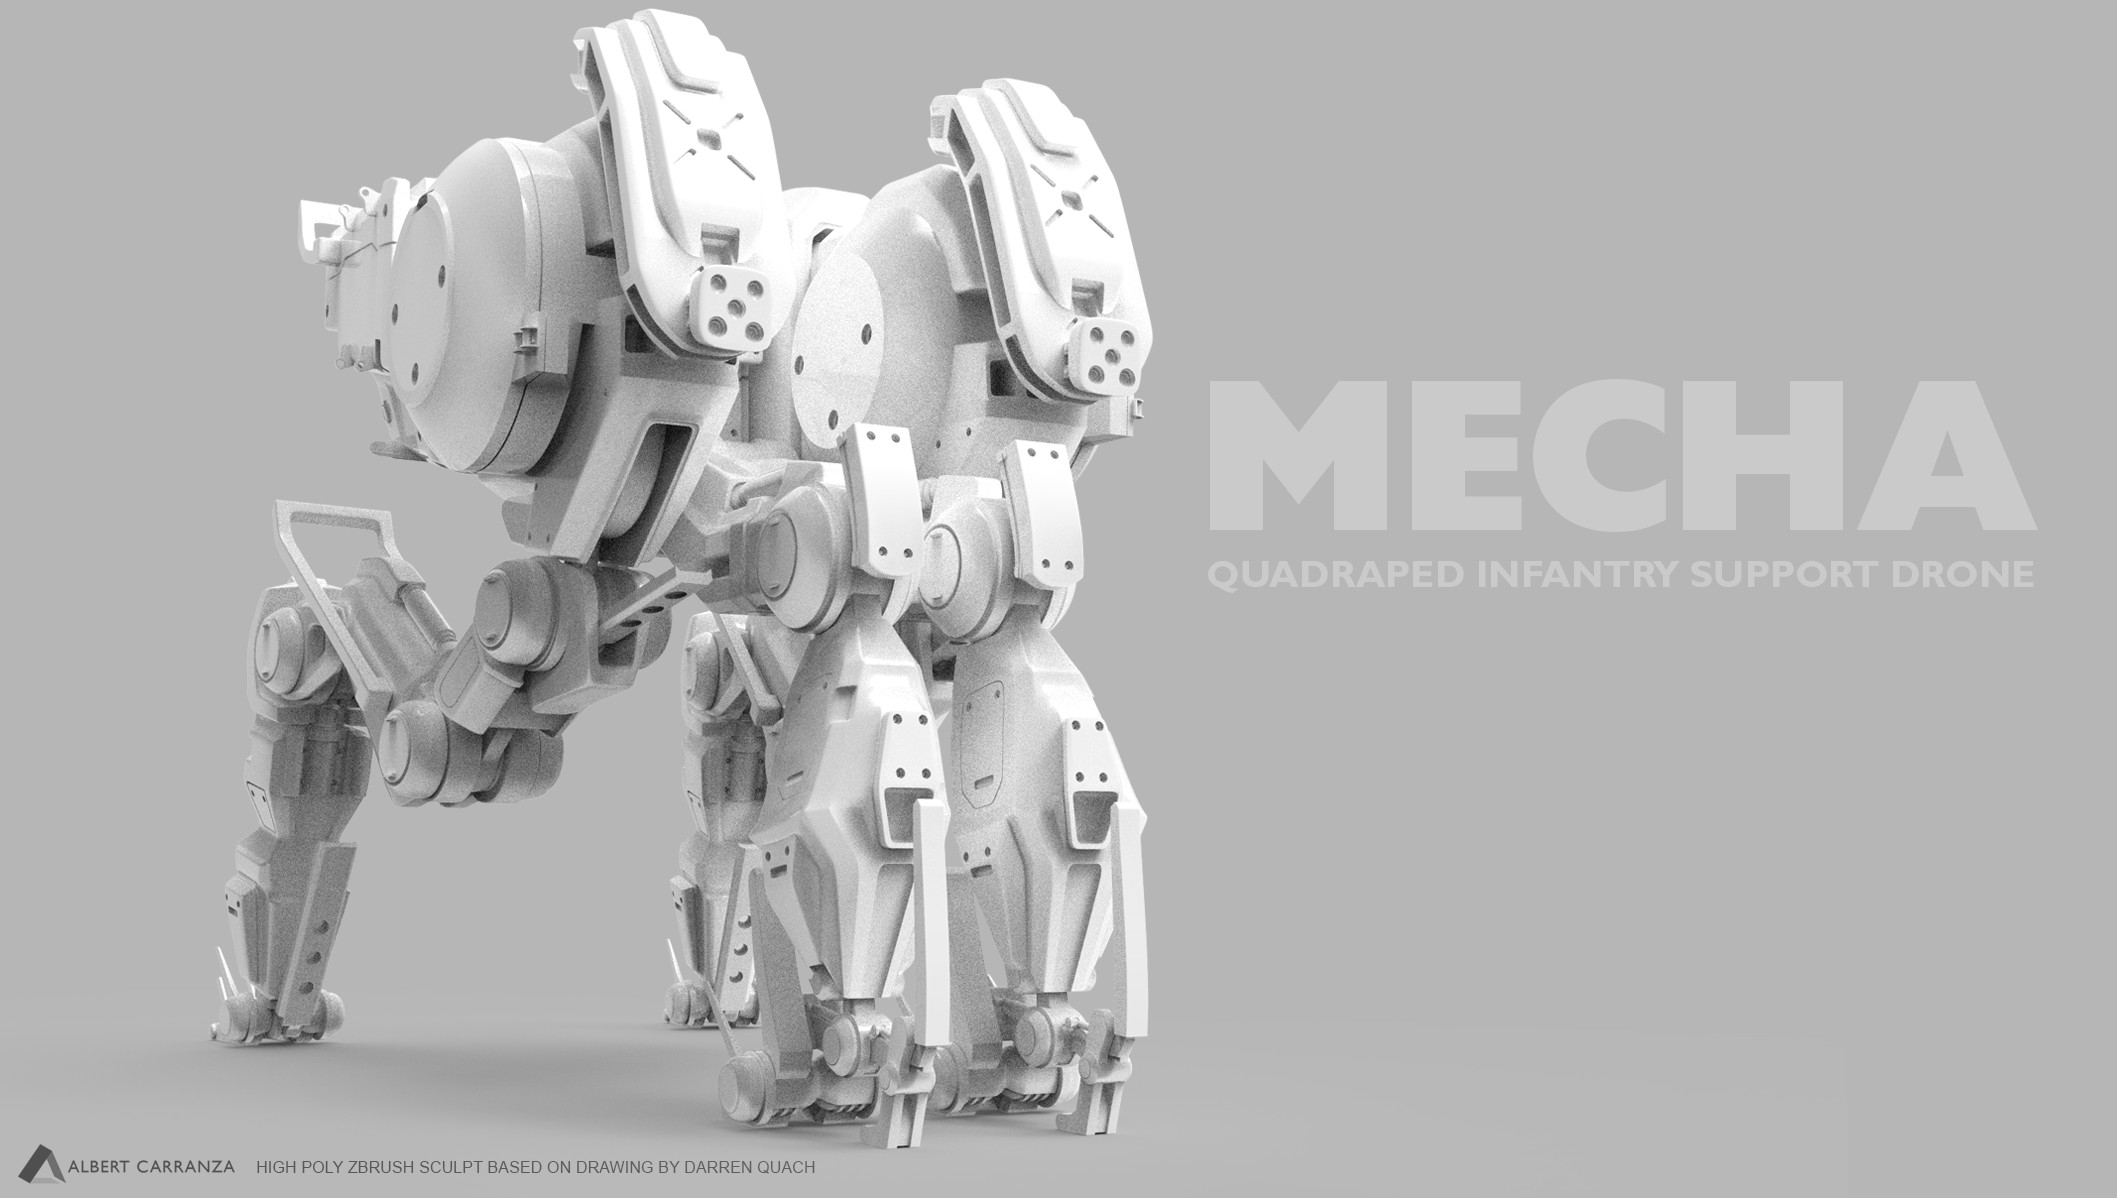 Mech based on a design from Darren Quach